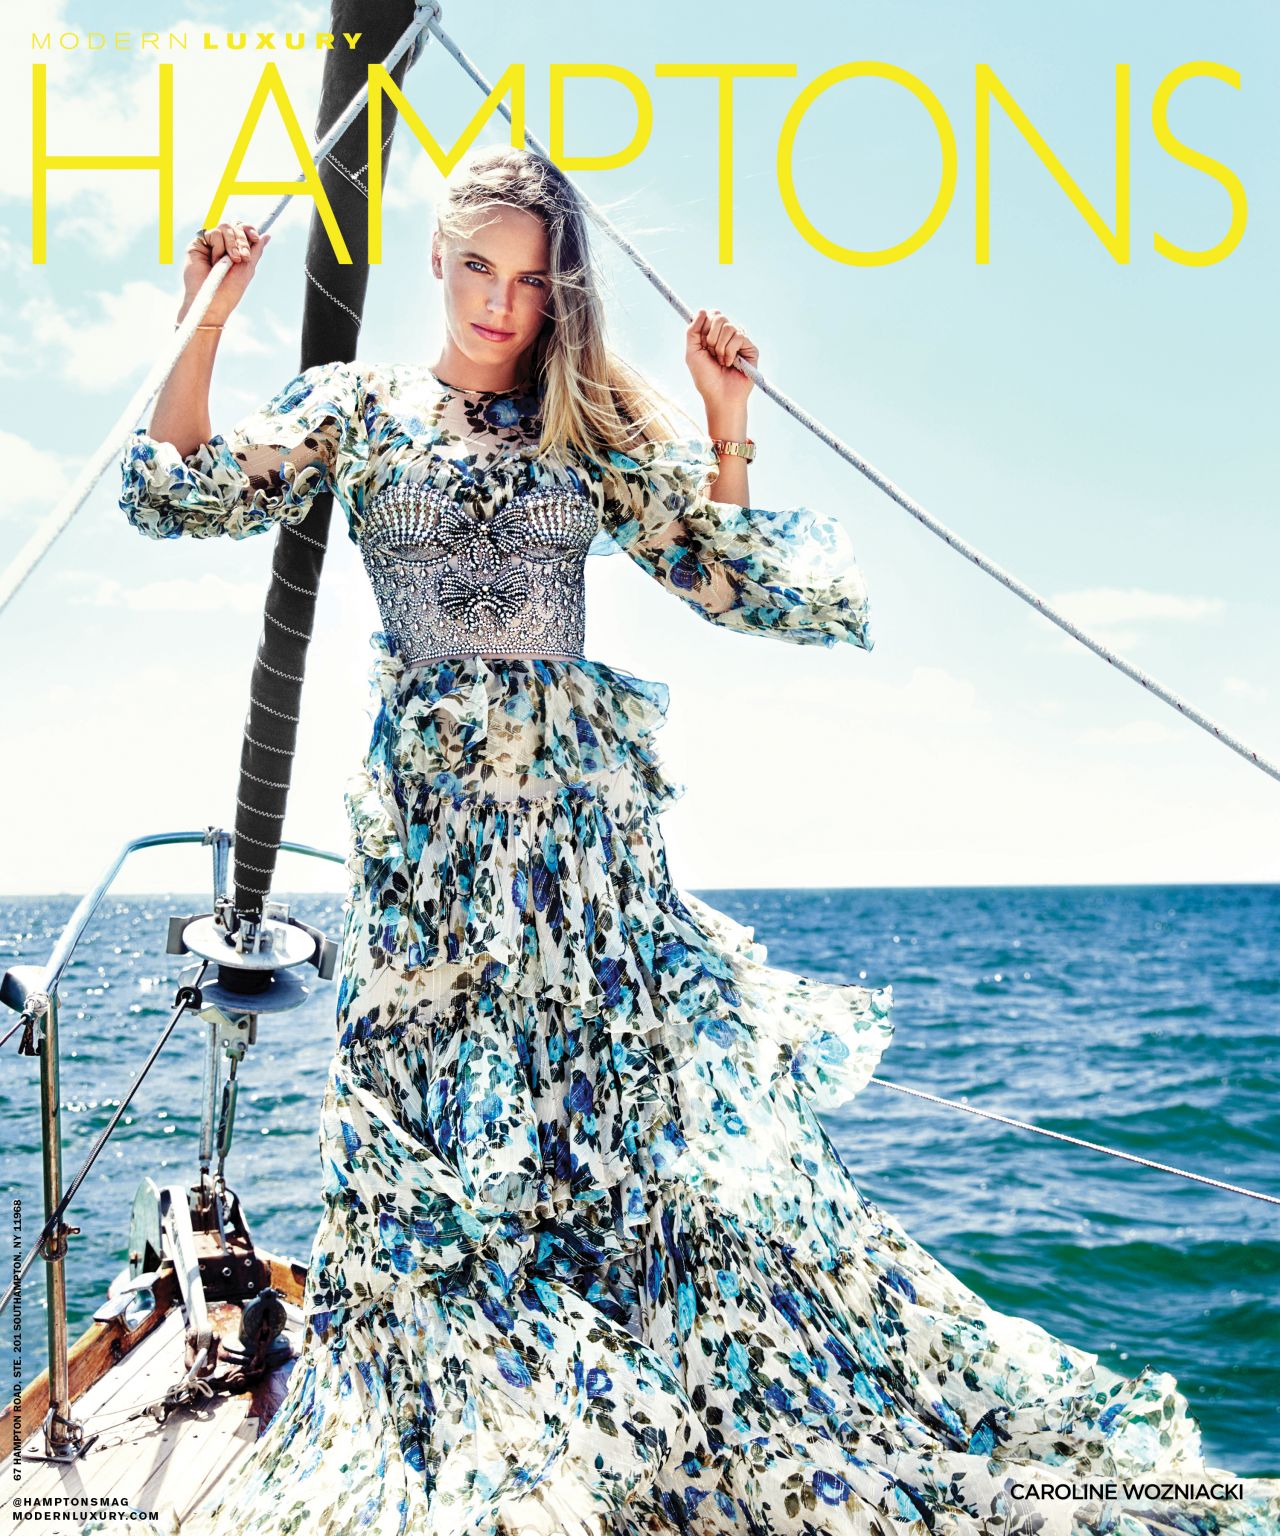 Caroline Wozniacki - Hamptons Magazine August 20181280 x 1536